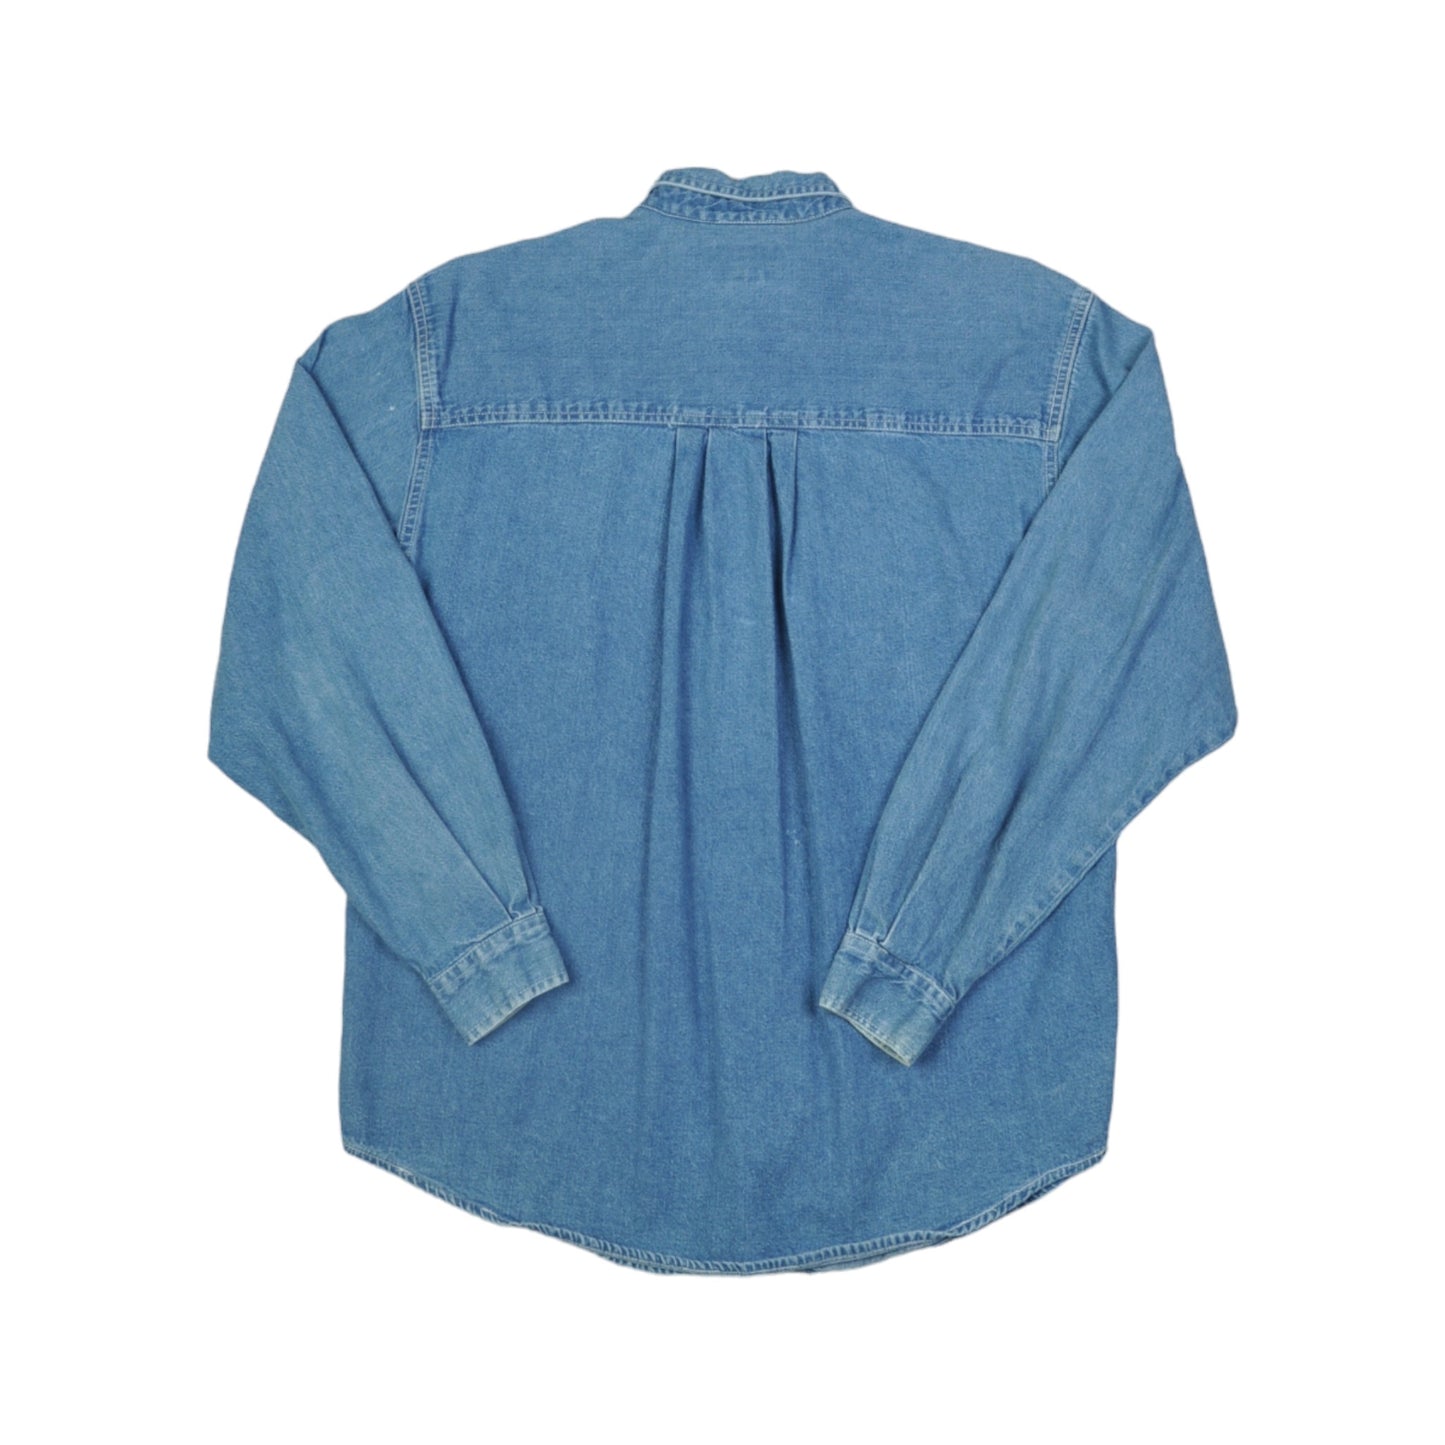 Vintage Dockers Denim Shirt Long Sleeve Blue Ladies Medium